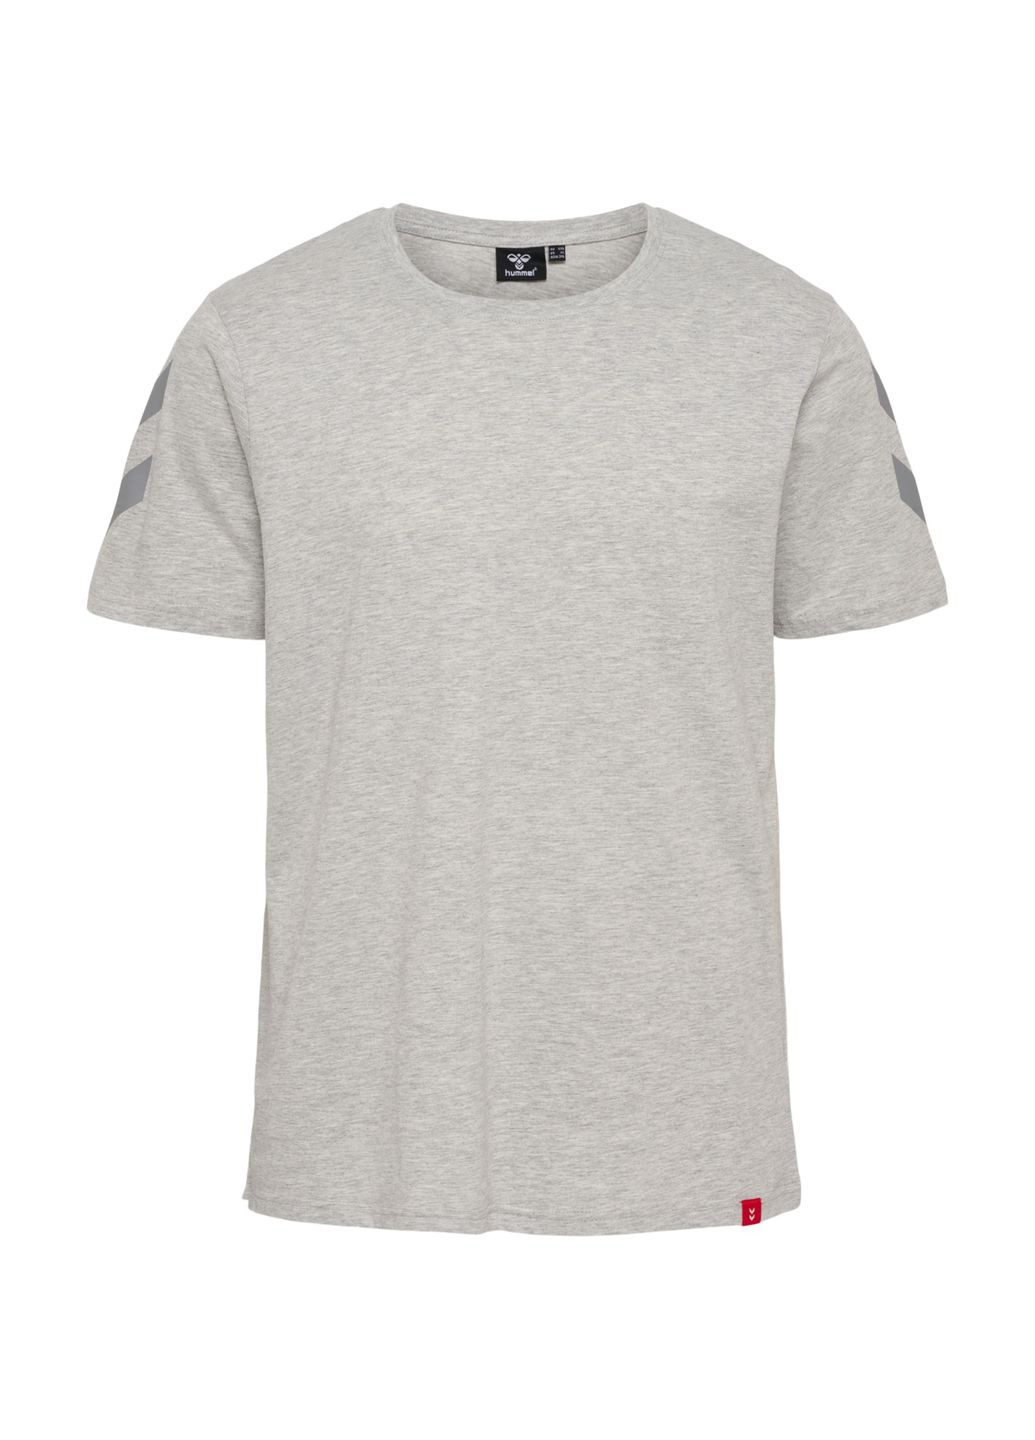 Сіра футболка з логотипом для чоловіка 212570 сірий Hummel